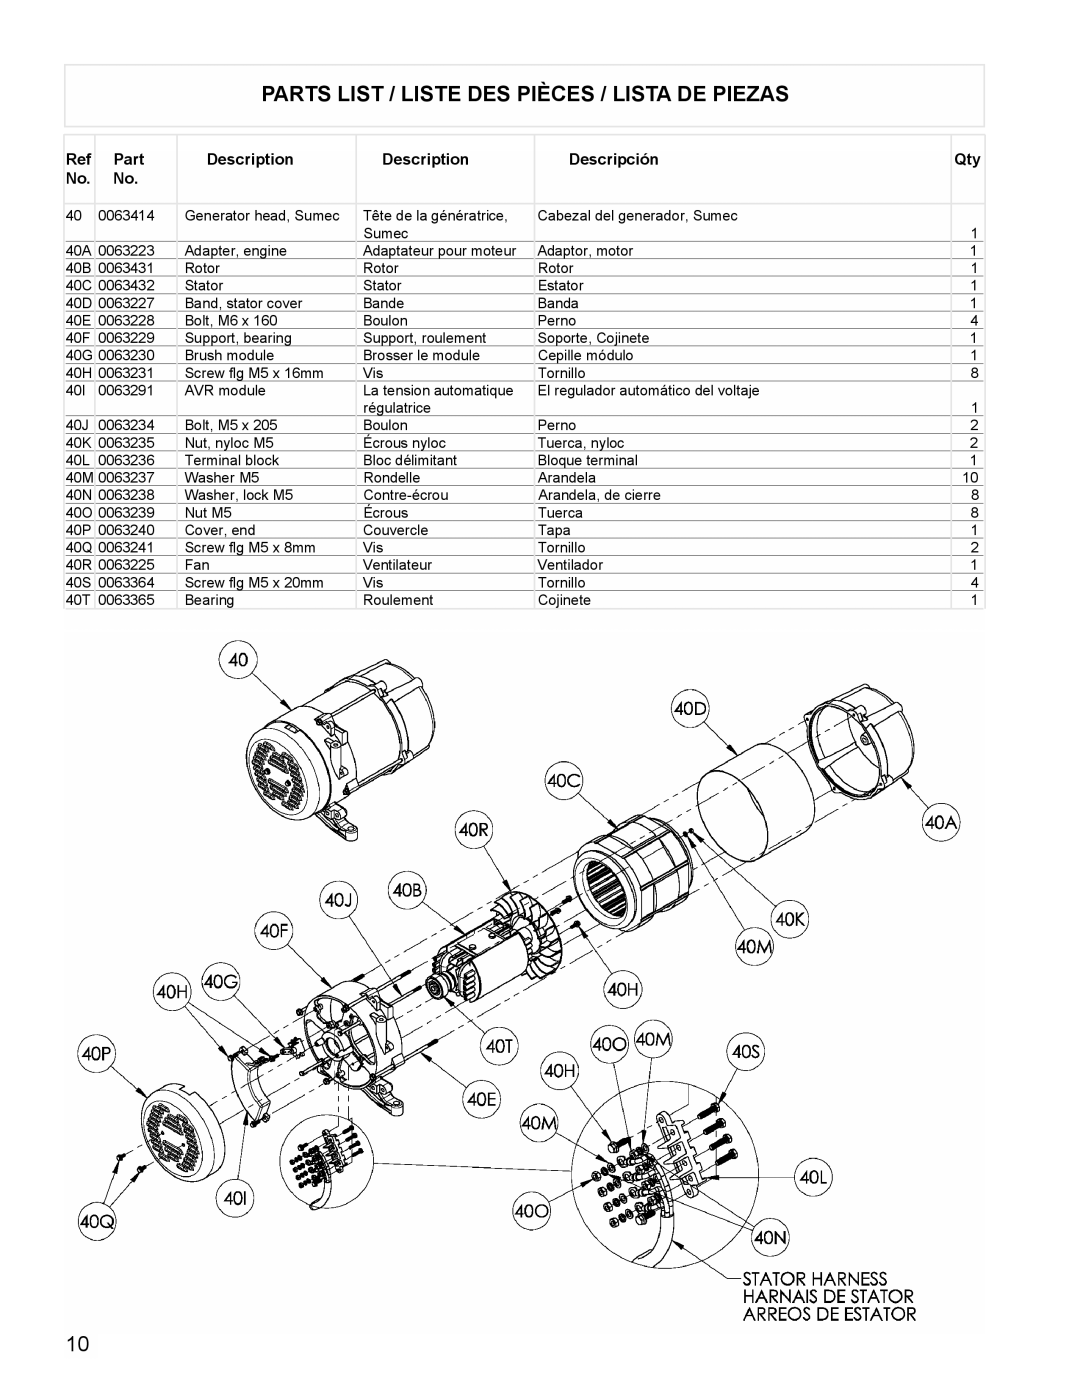 Powermate PM0525303.02 manual Parts List / Liste Des Pièces / Lista De Piezas, Description, Descripción 